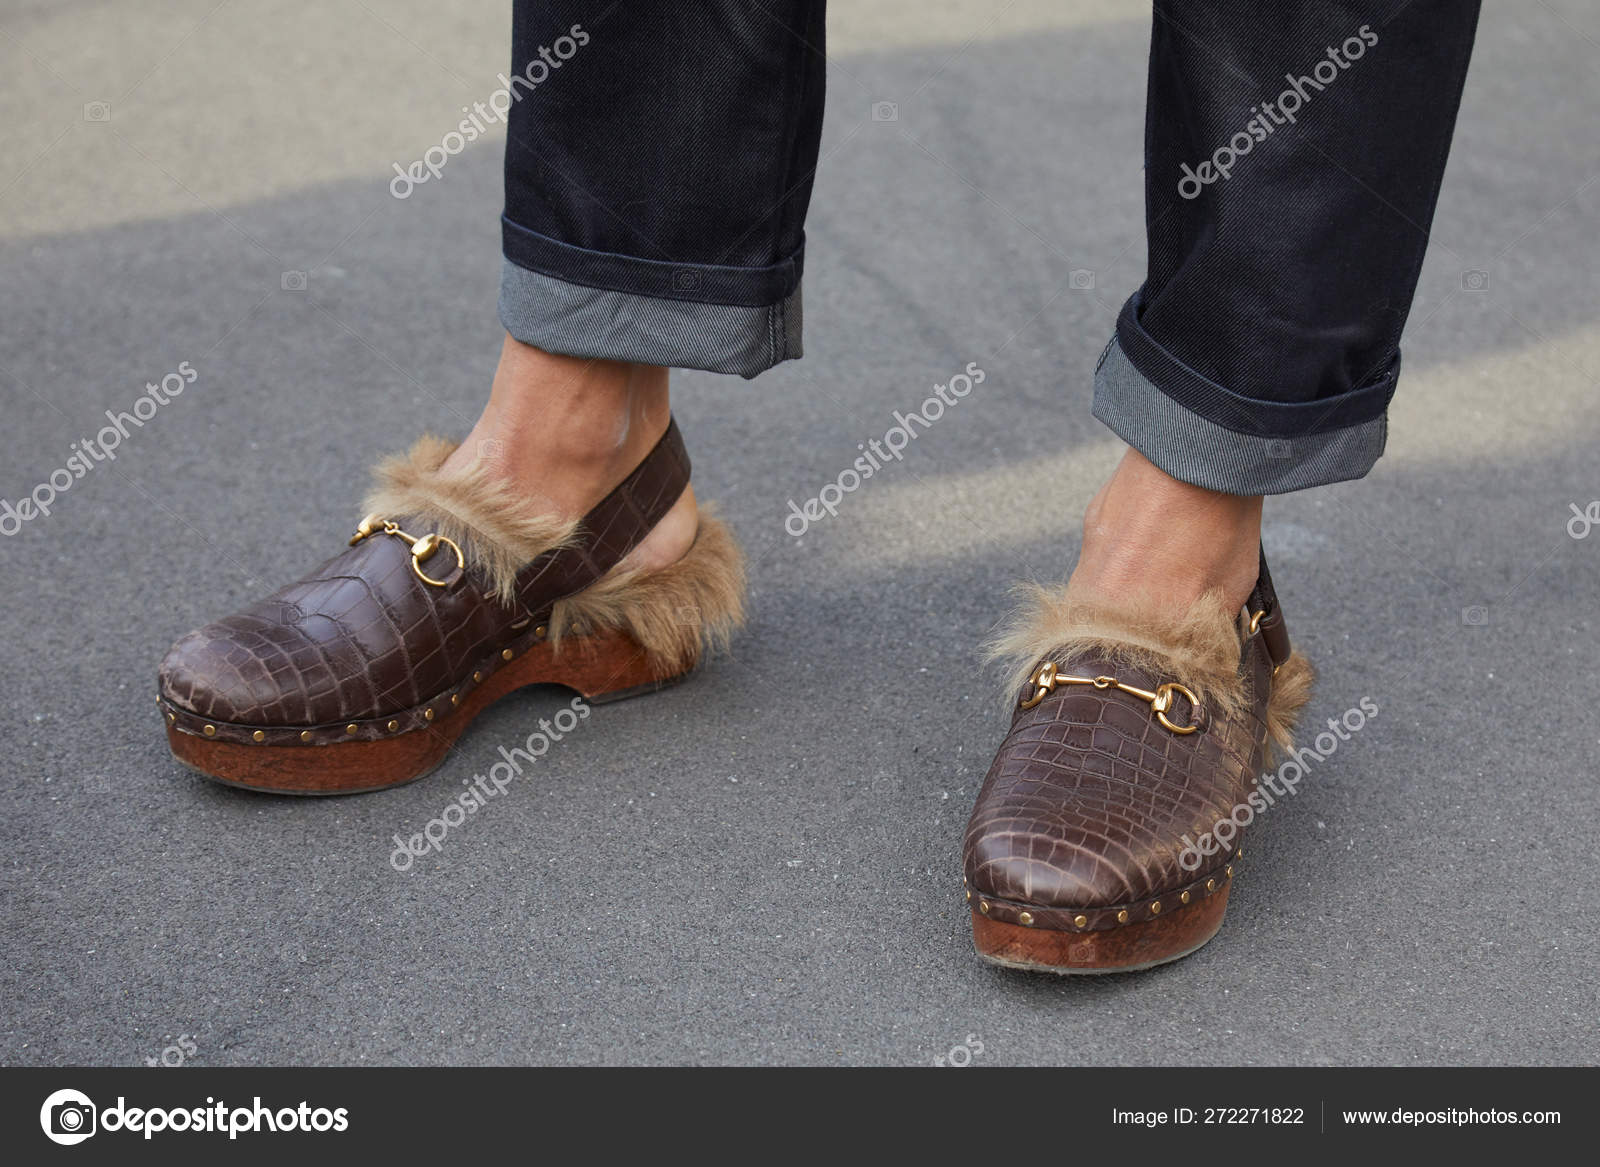 gucci clogs shoes